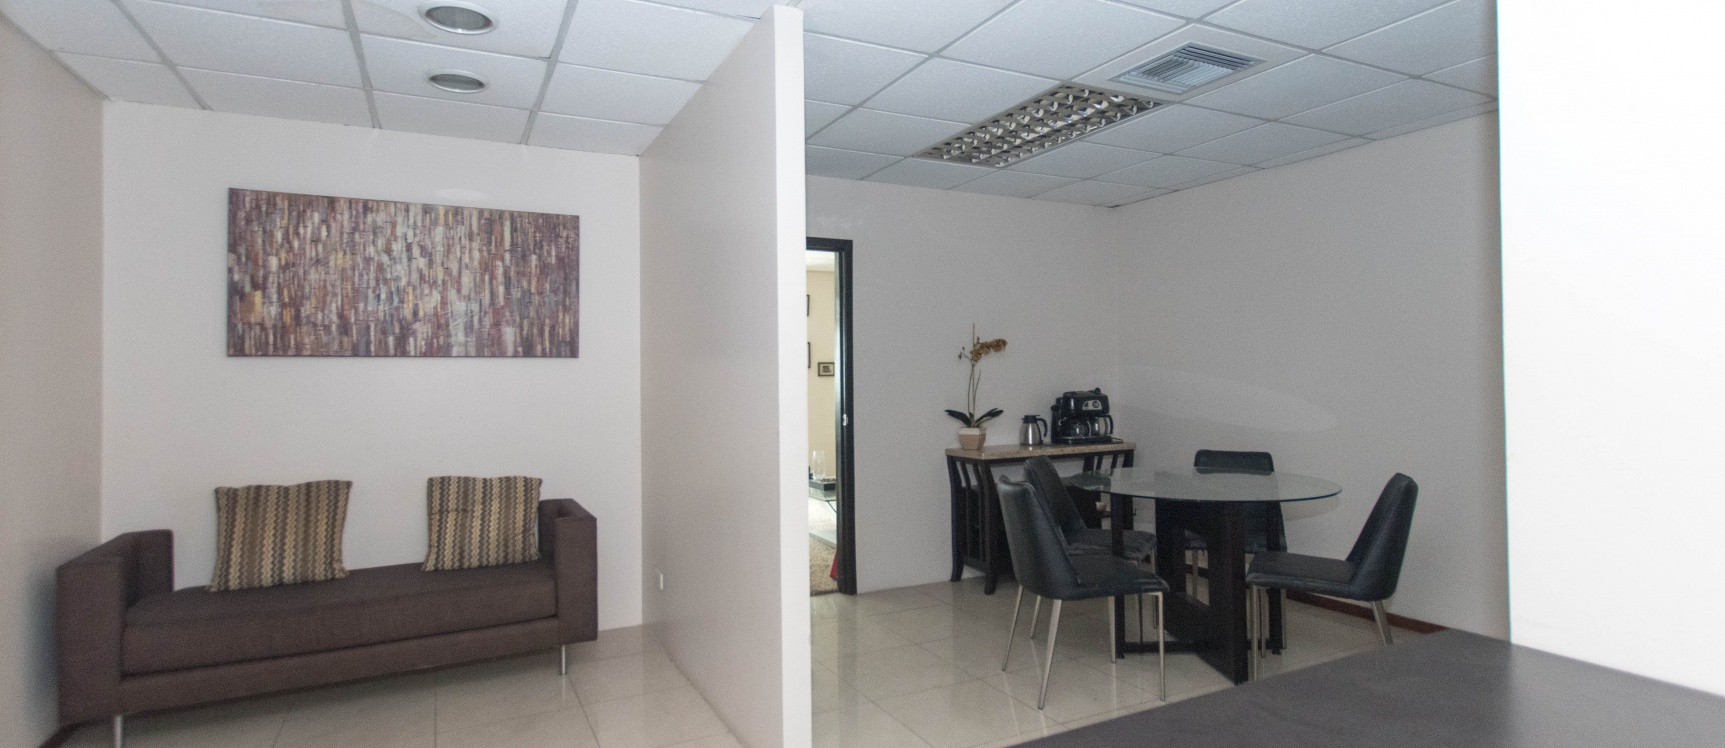 GeoBienes - Oficina en alquiler ubicada en Edificio Trade Building - Plusvalia Guayaquil Casas de venta y alquiler Inmobiliaria Ecuador